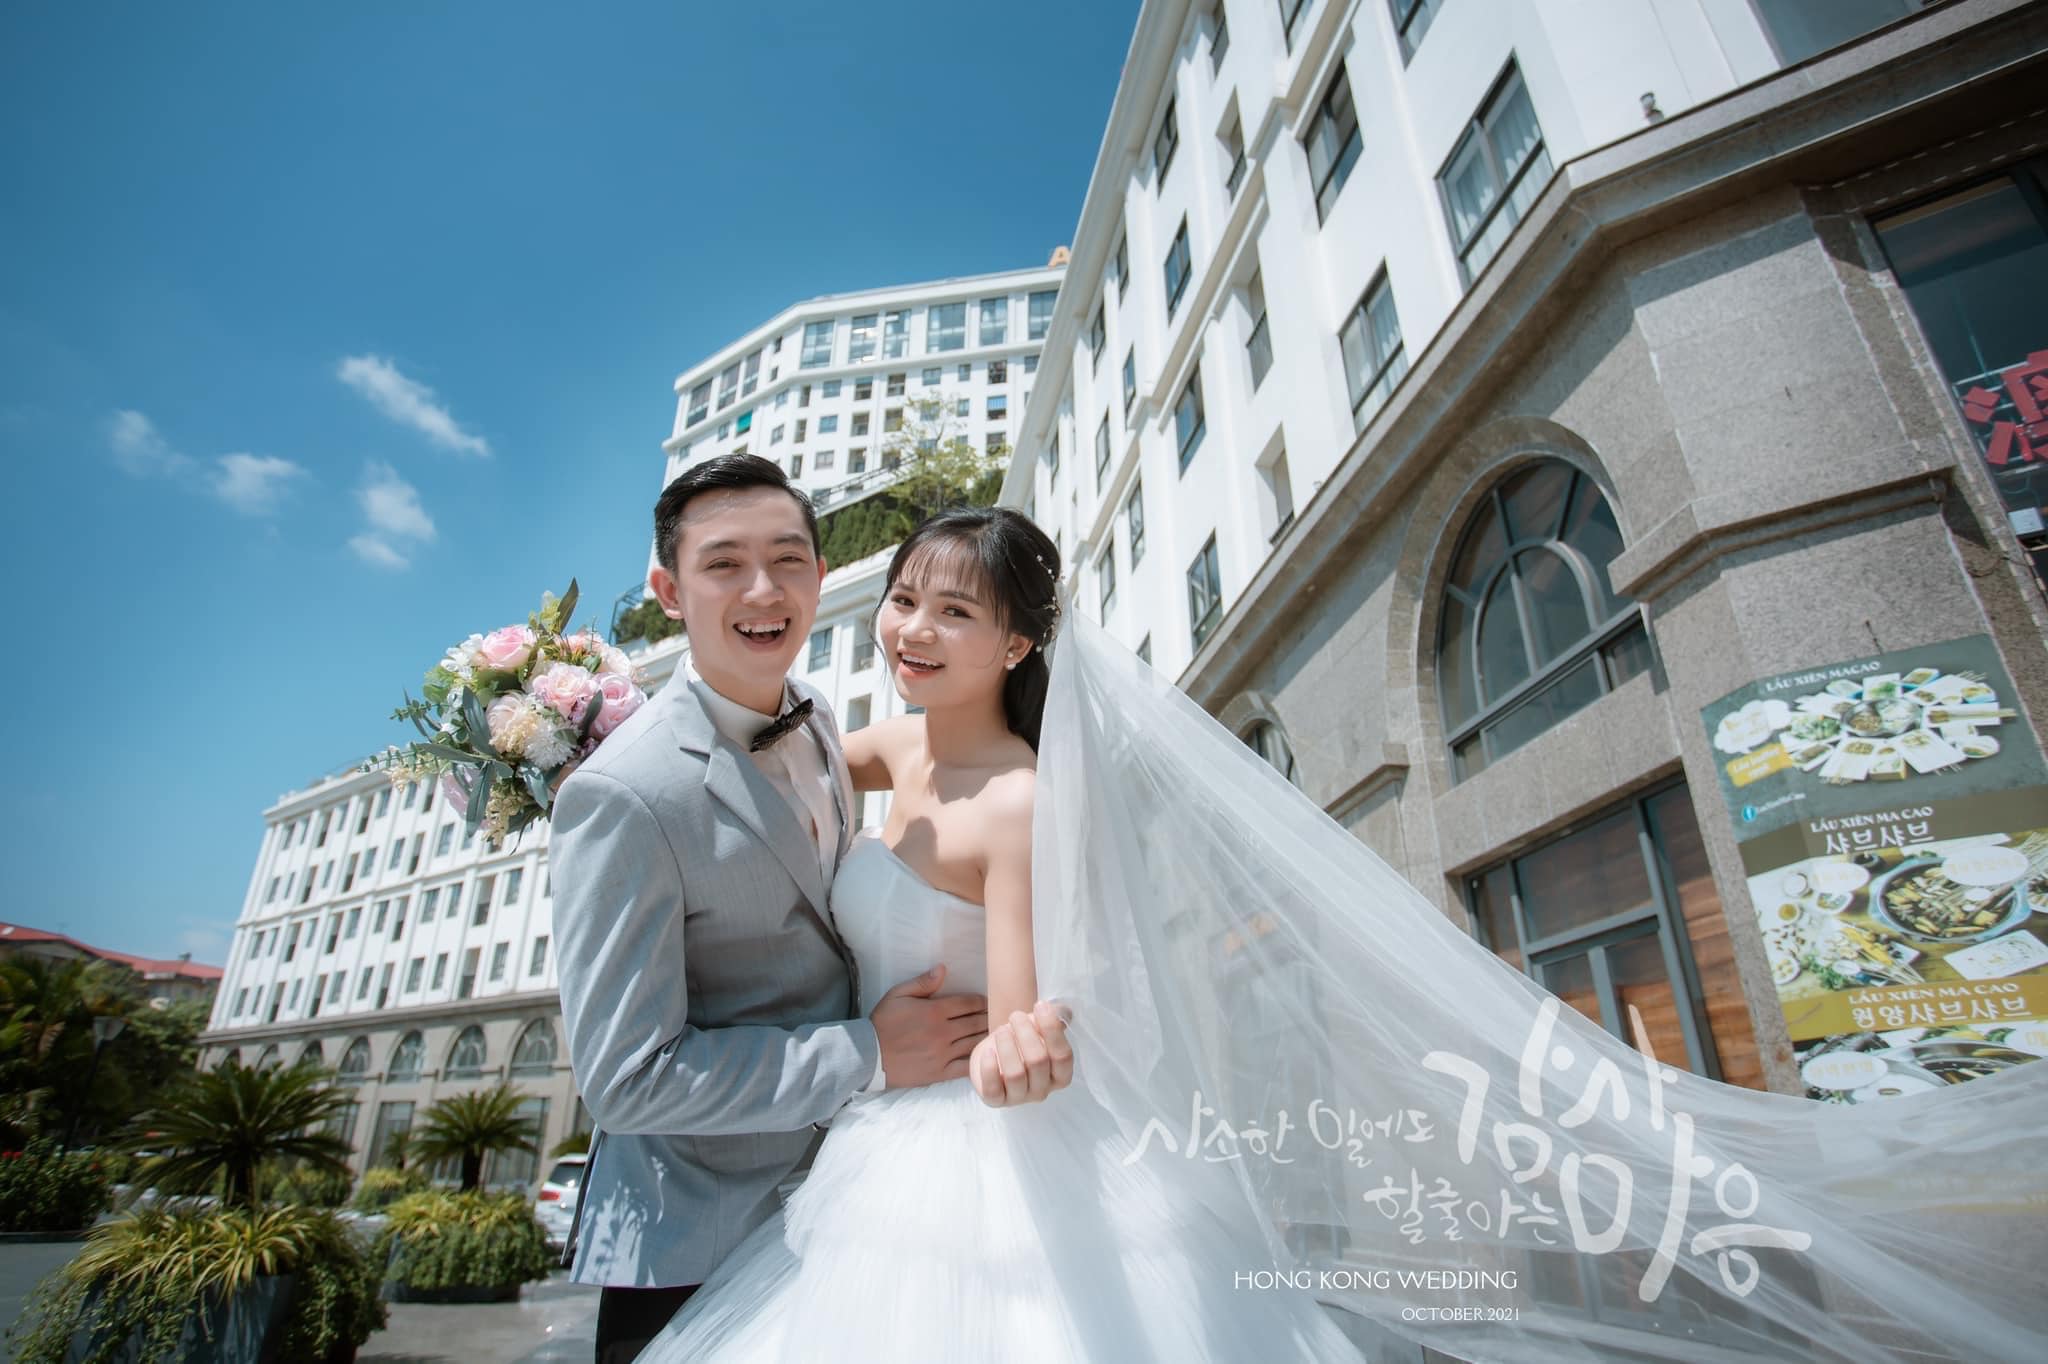 Hongkong liên tục cập nhật góc chụp, trang phục và địa điểm chụp mới thổi hồn vào bộ ảnh cưới